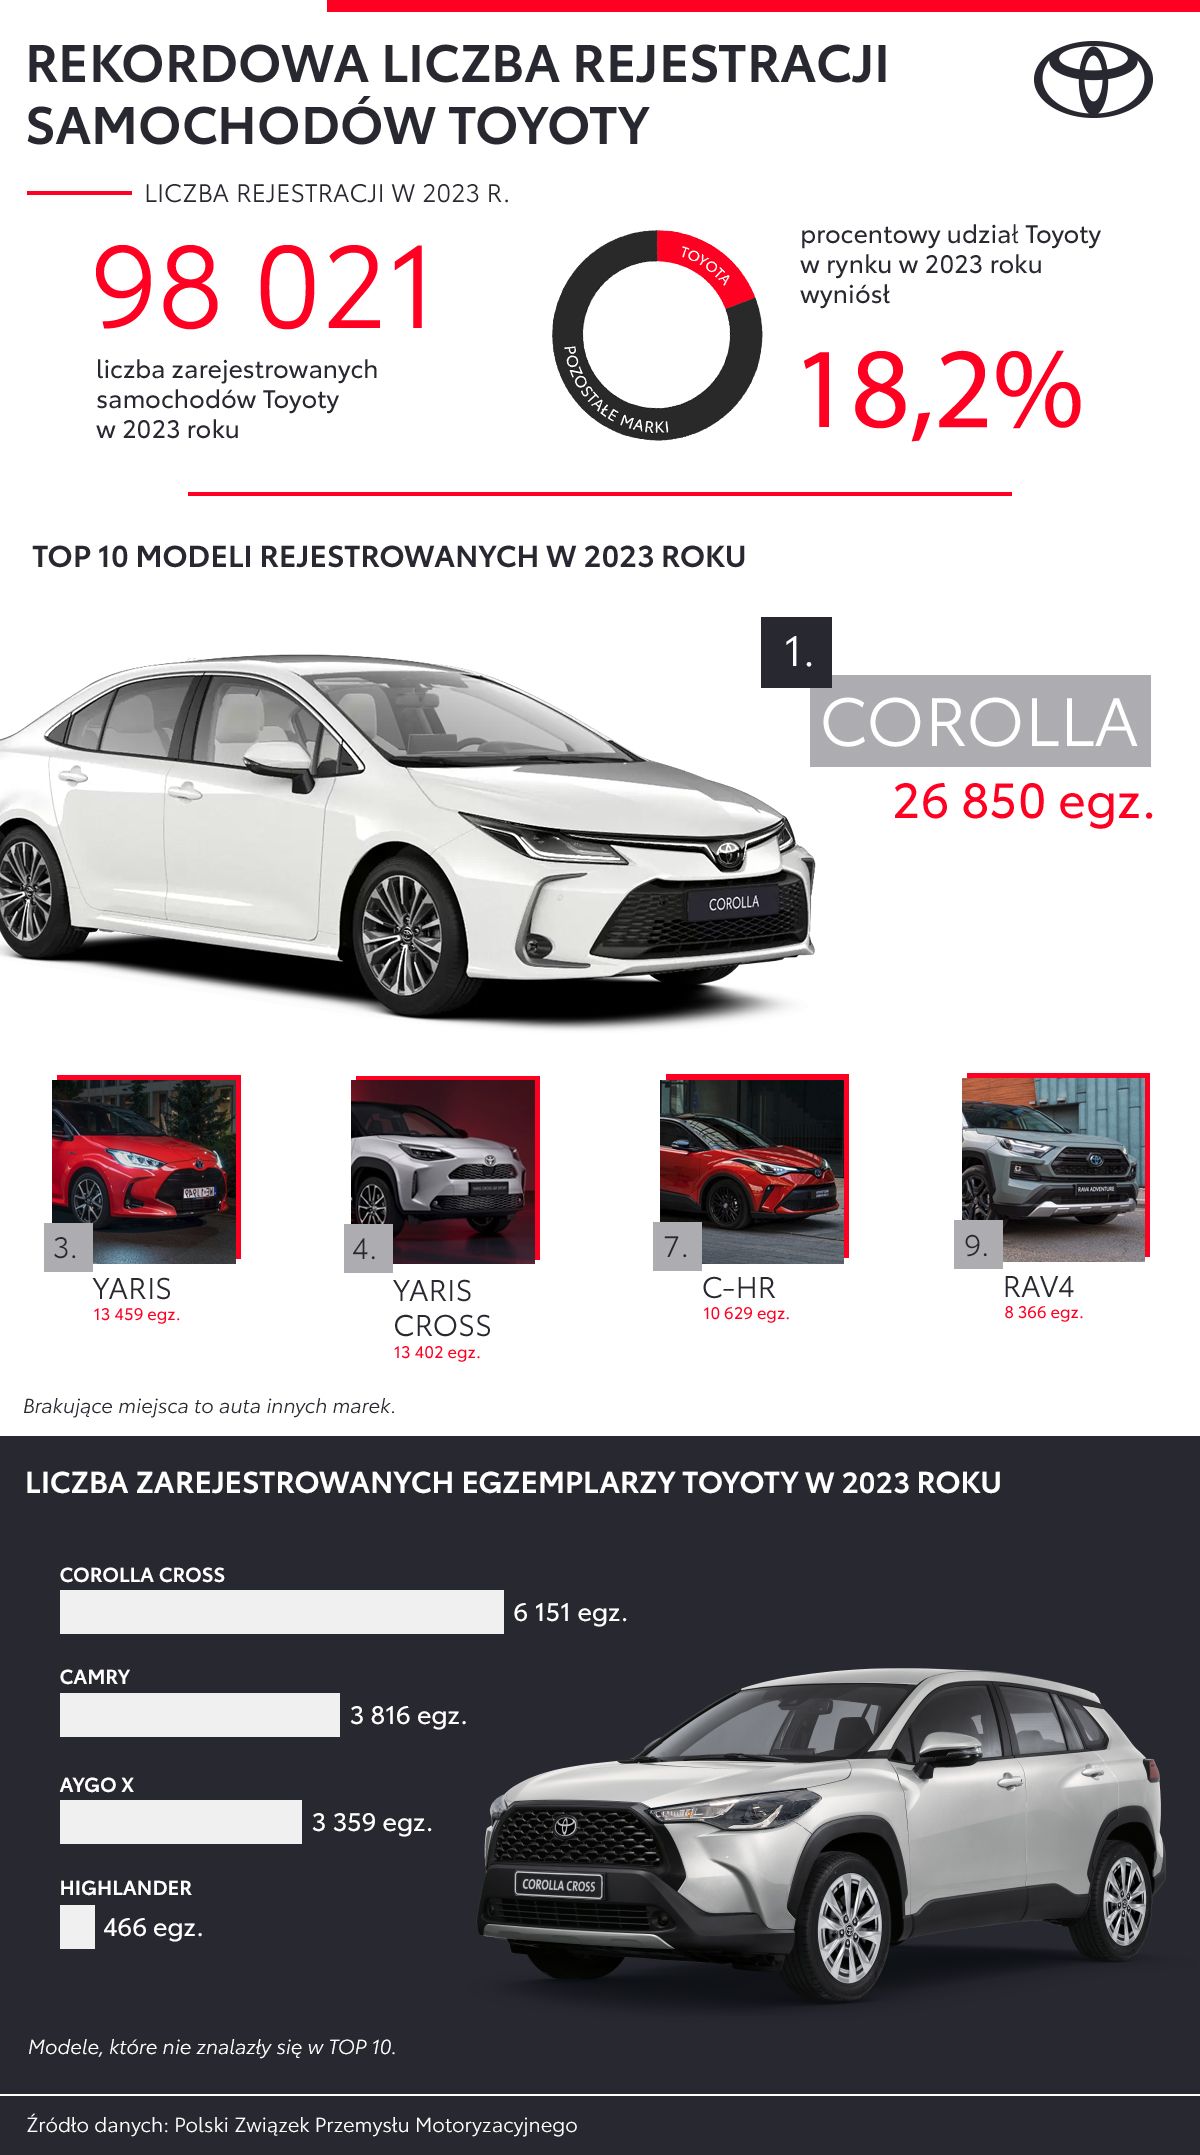 Kolejny rok dominacji Toyoty w Polsce. Ponad 98 tys. zarejestrowanych aut osobowych i dostawczych, Corolla najchętniej wybieranym modelem